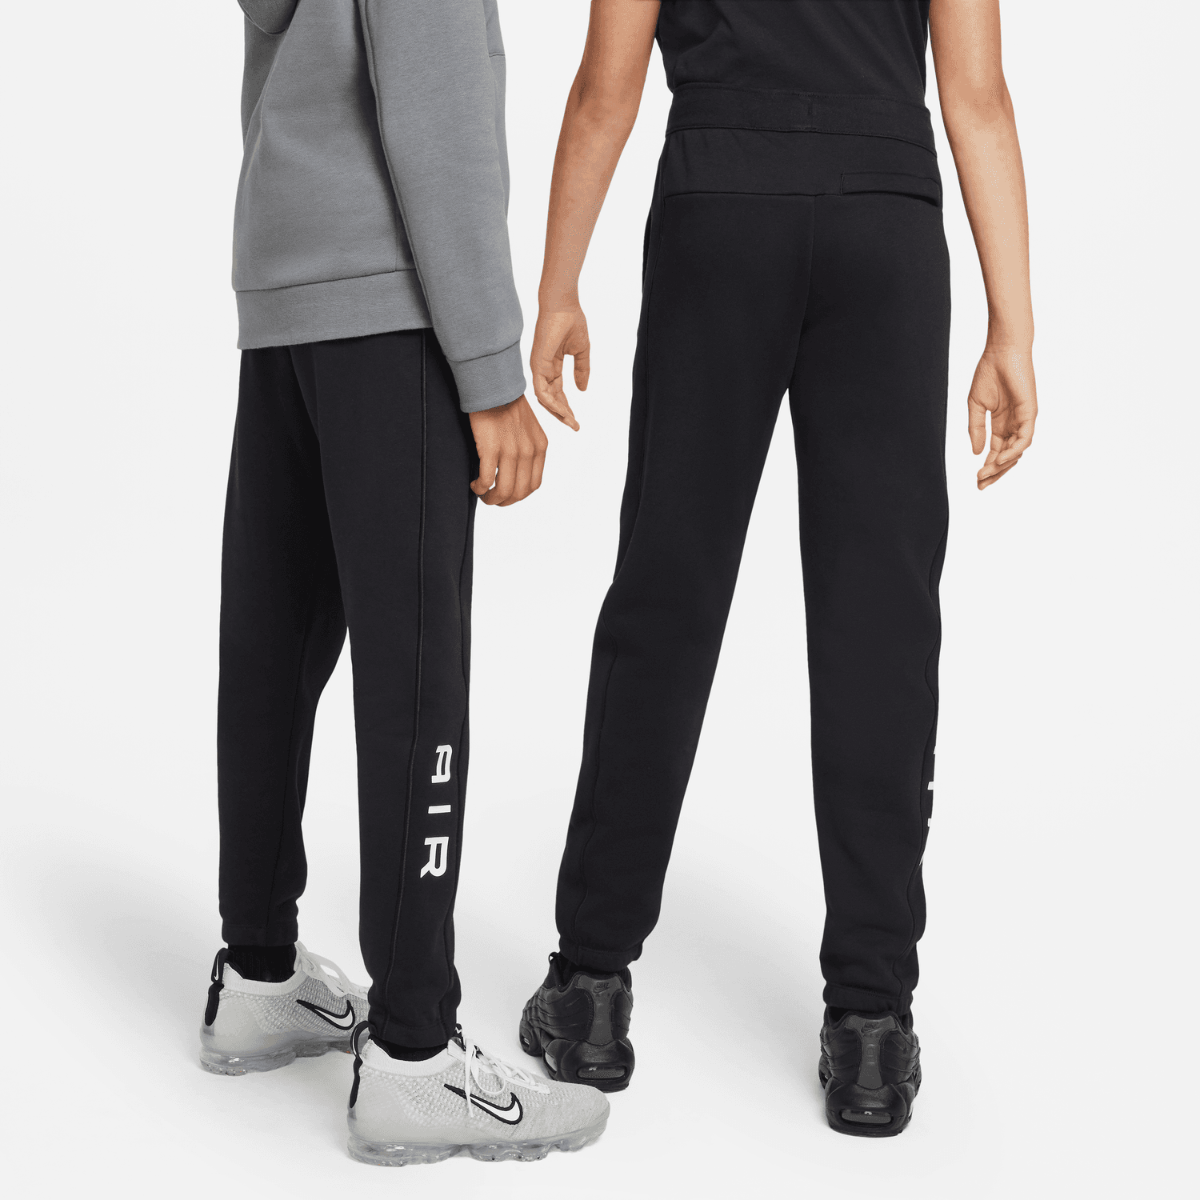 Pantalon Nike Air Junior - Blanc/Noir